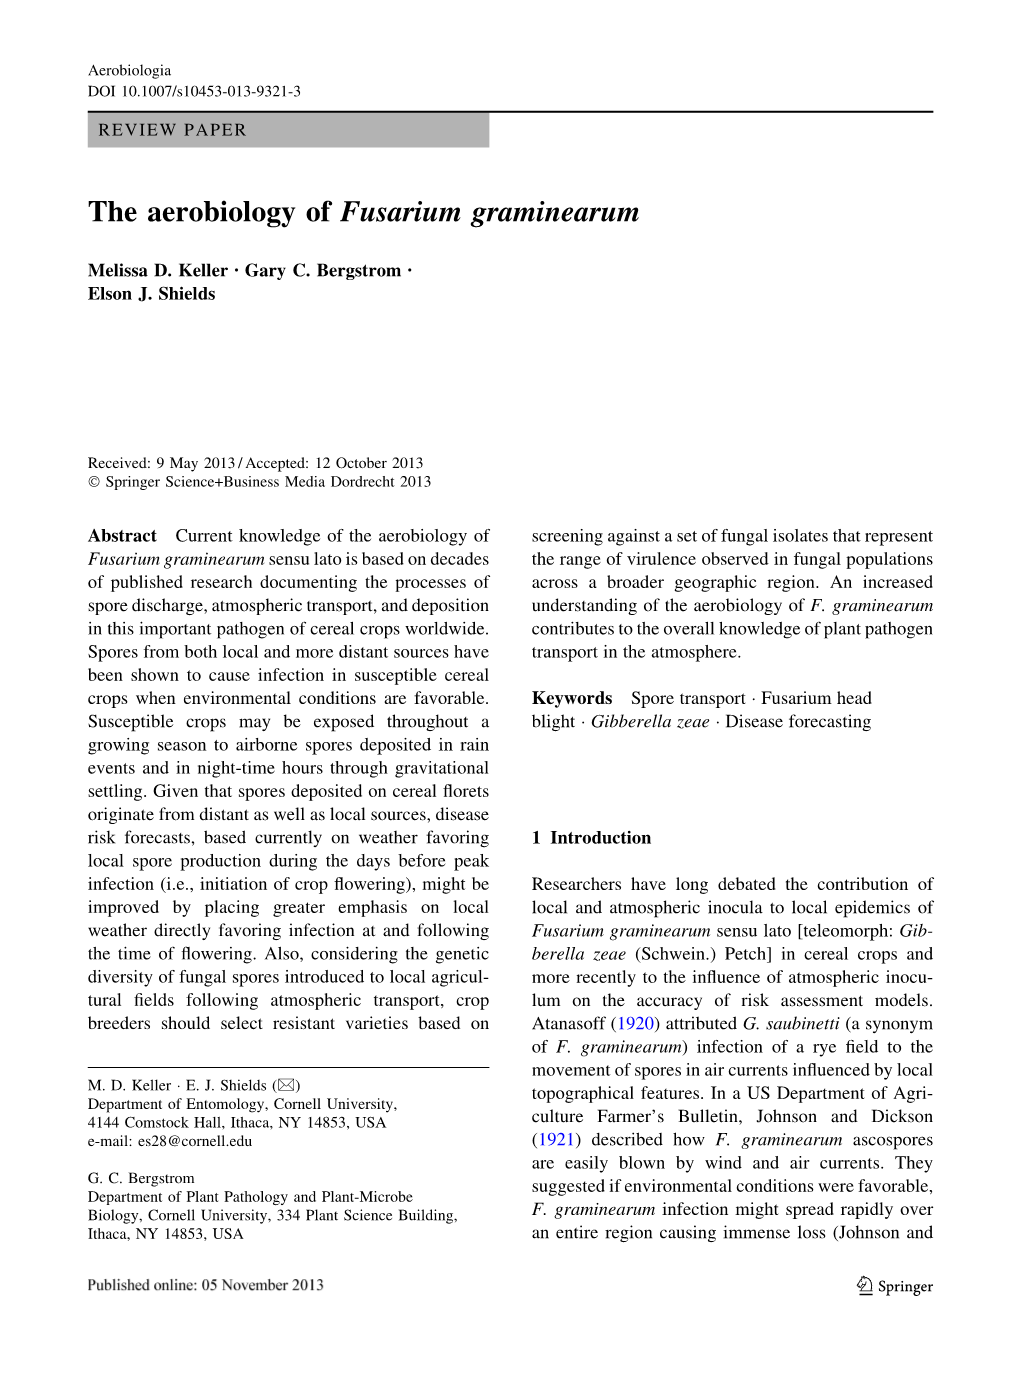 The Aerobiology of Fusarium Graminearum